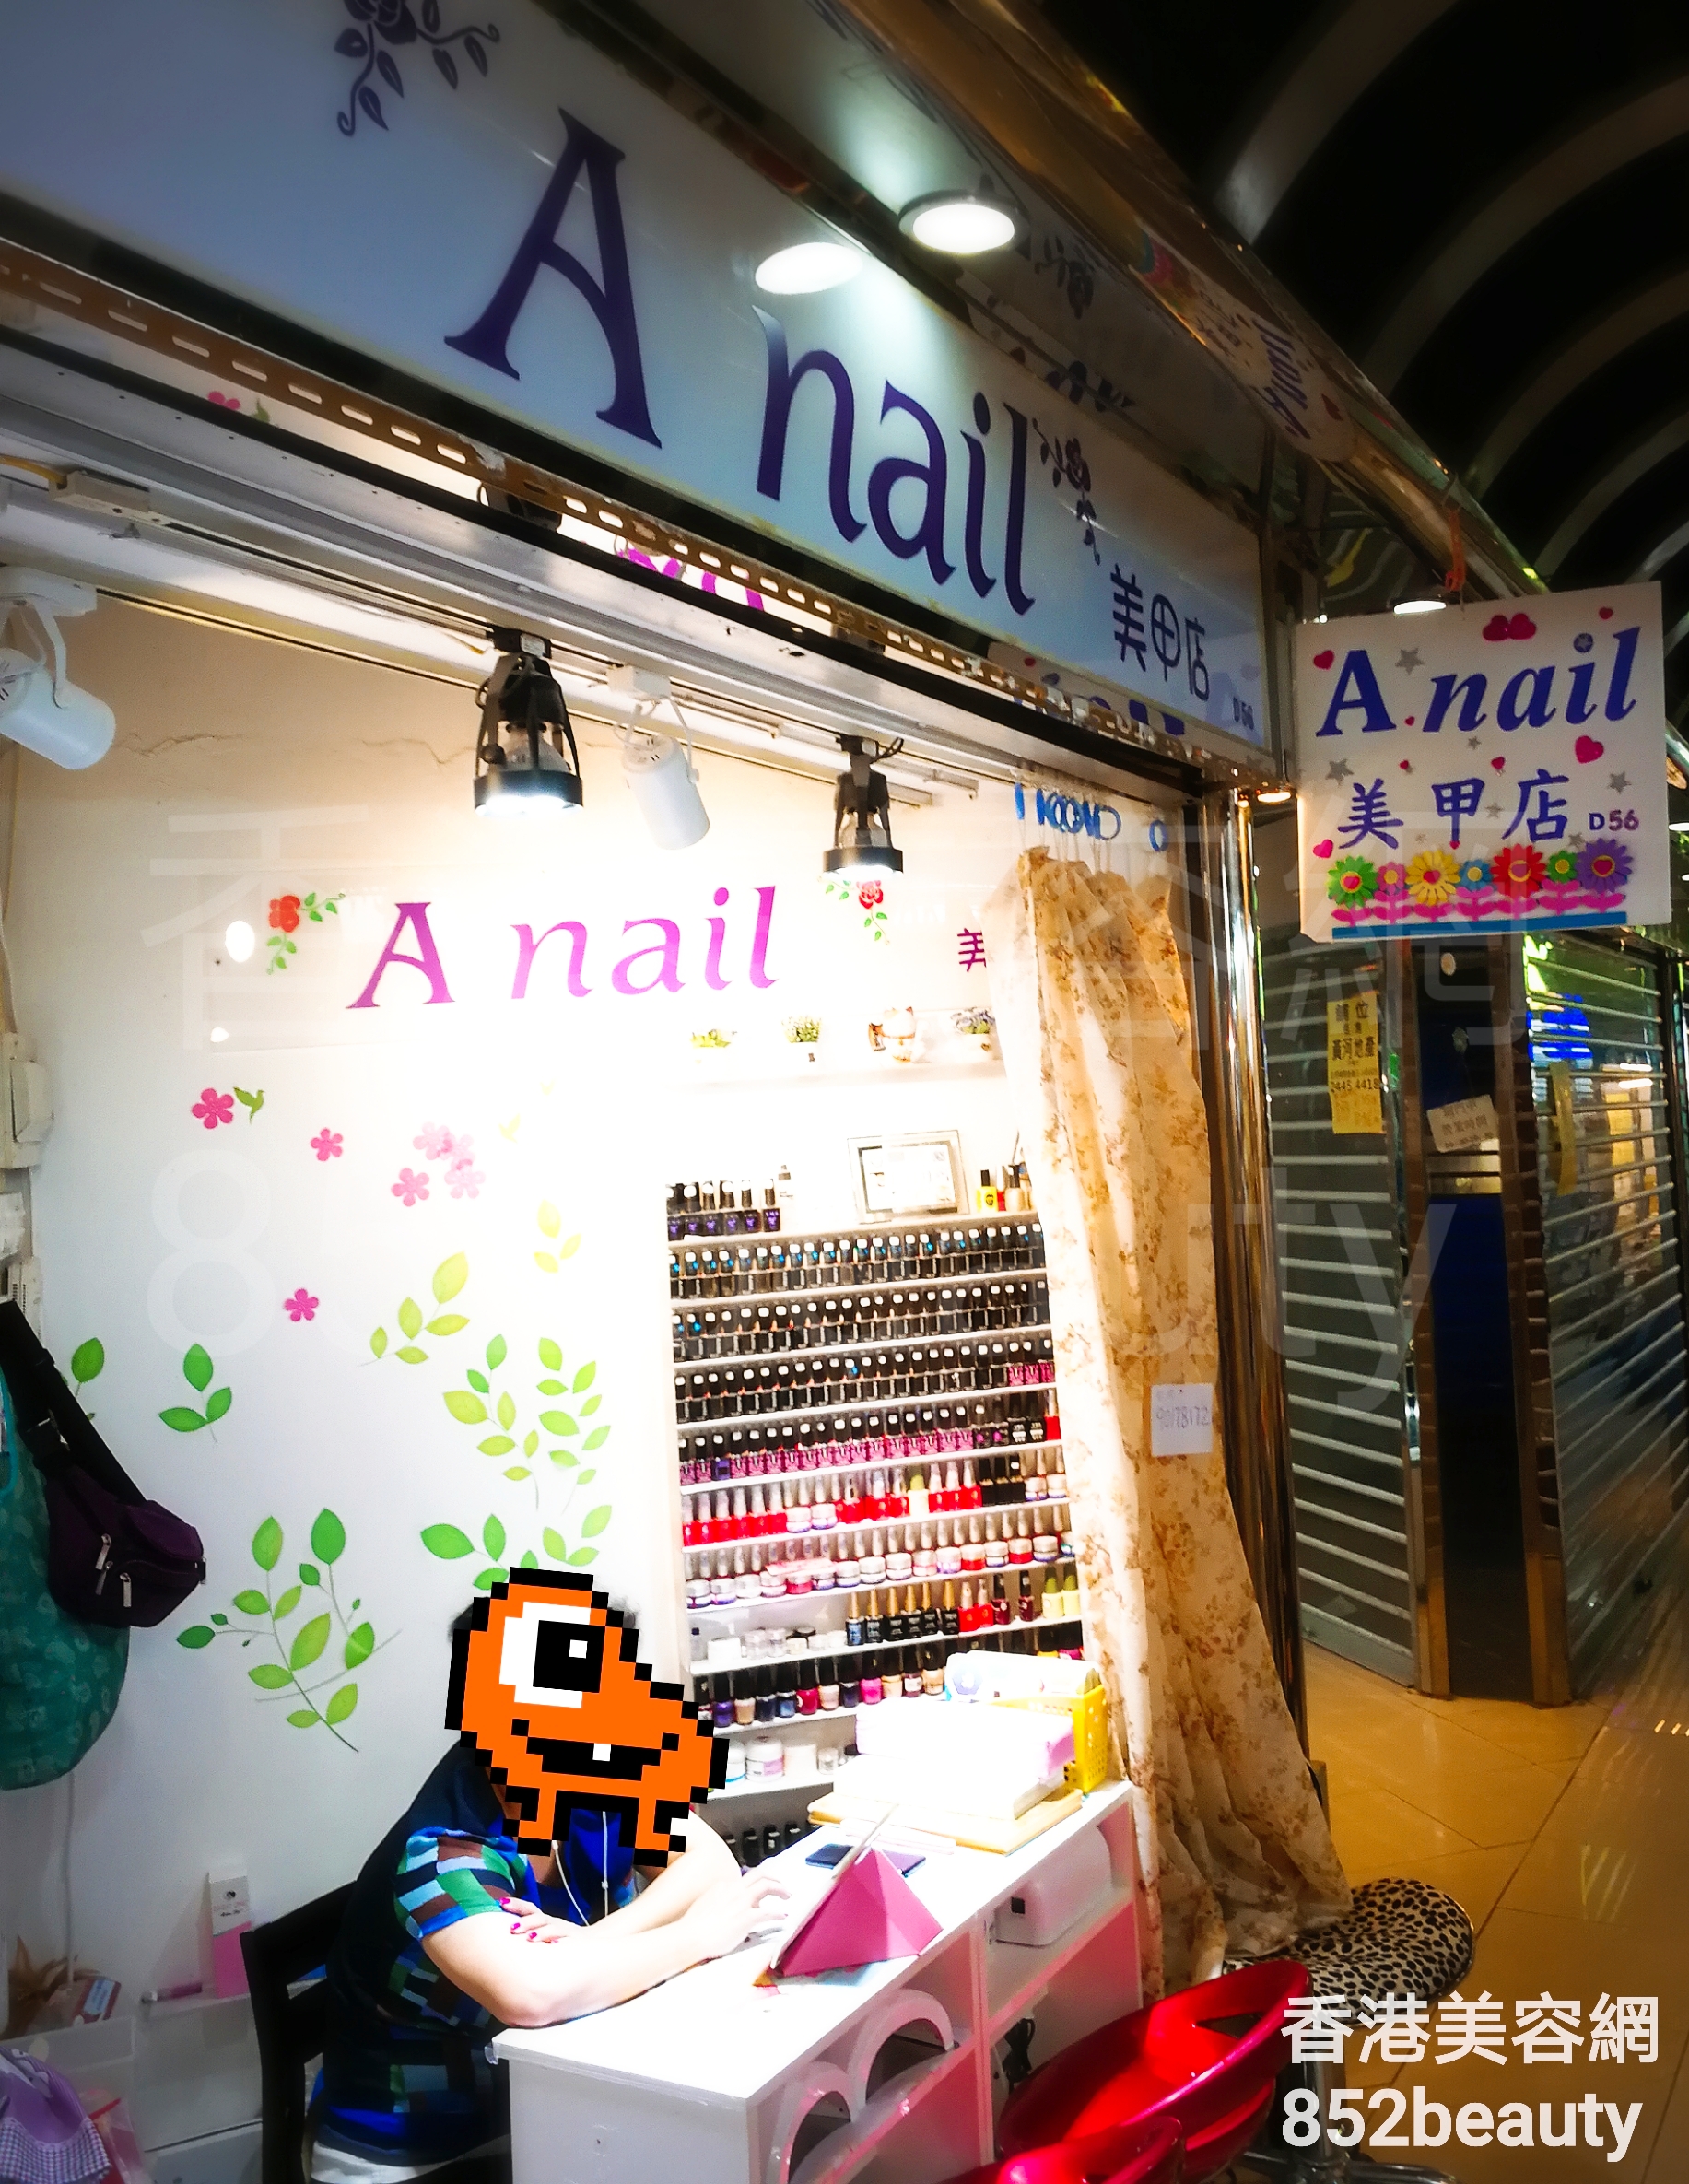 Manicure: A nail 美甲店